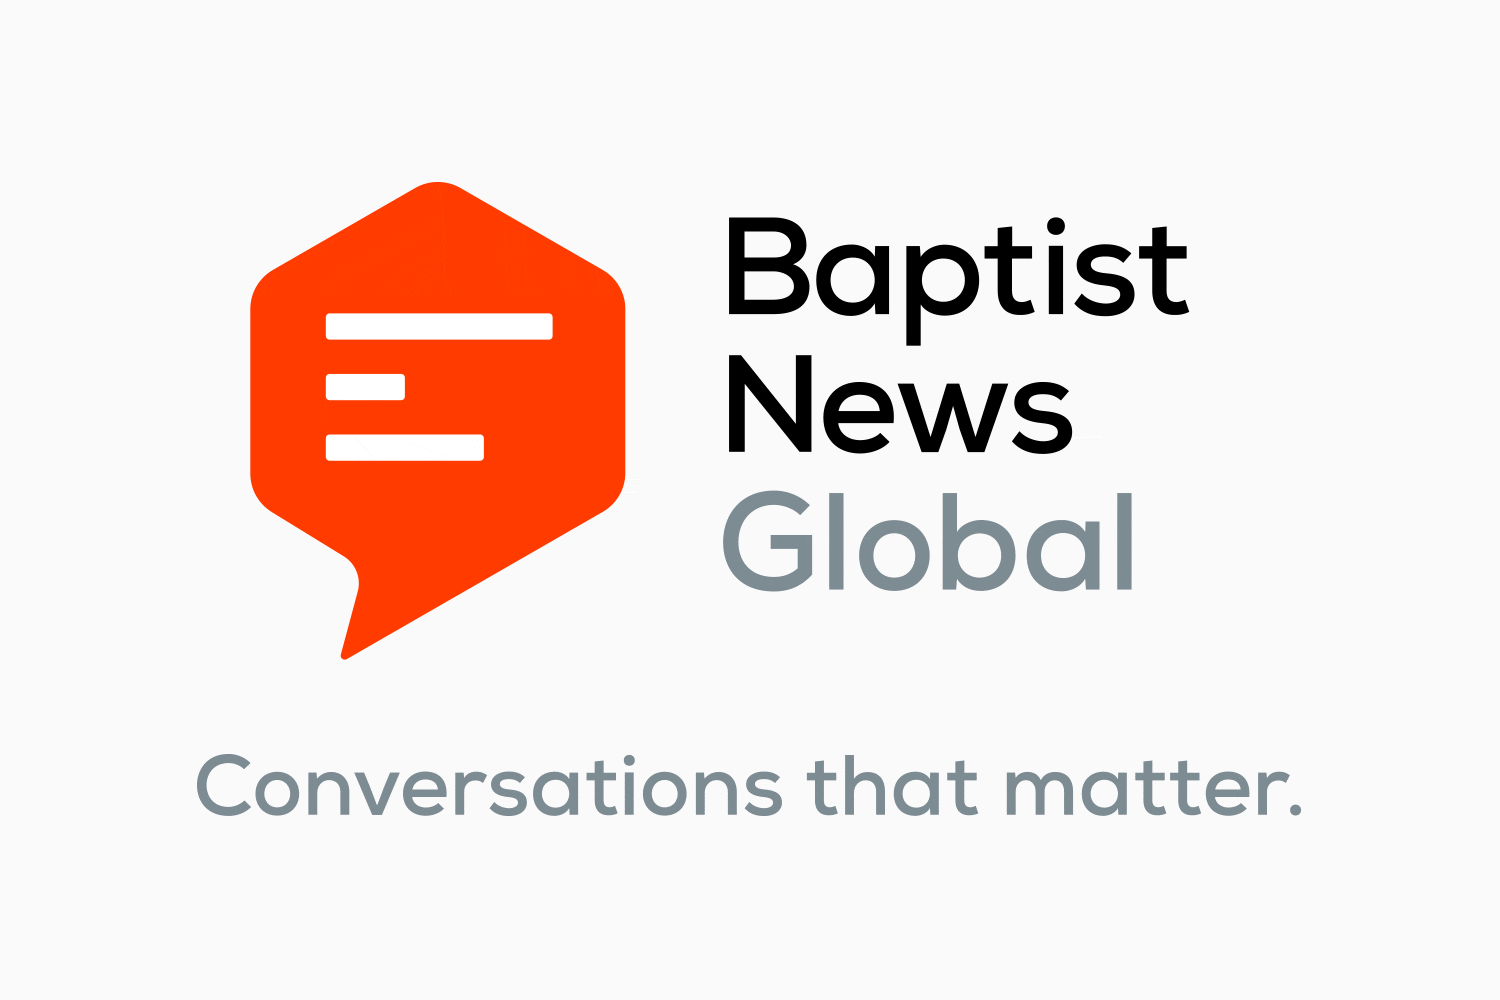 (c) Baptistnews.com